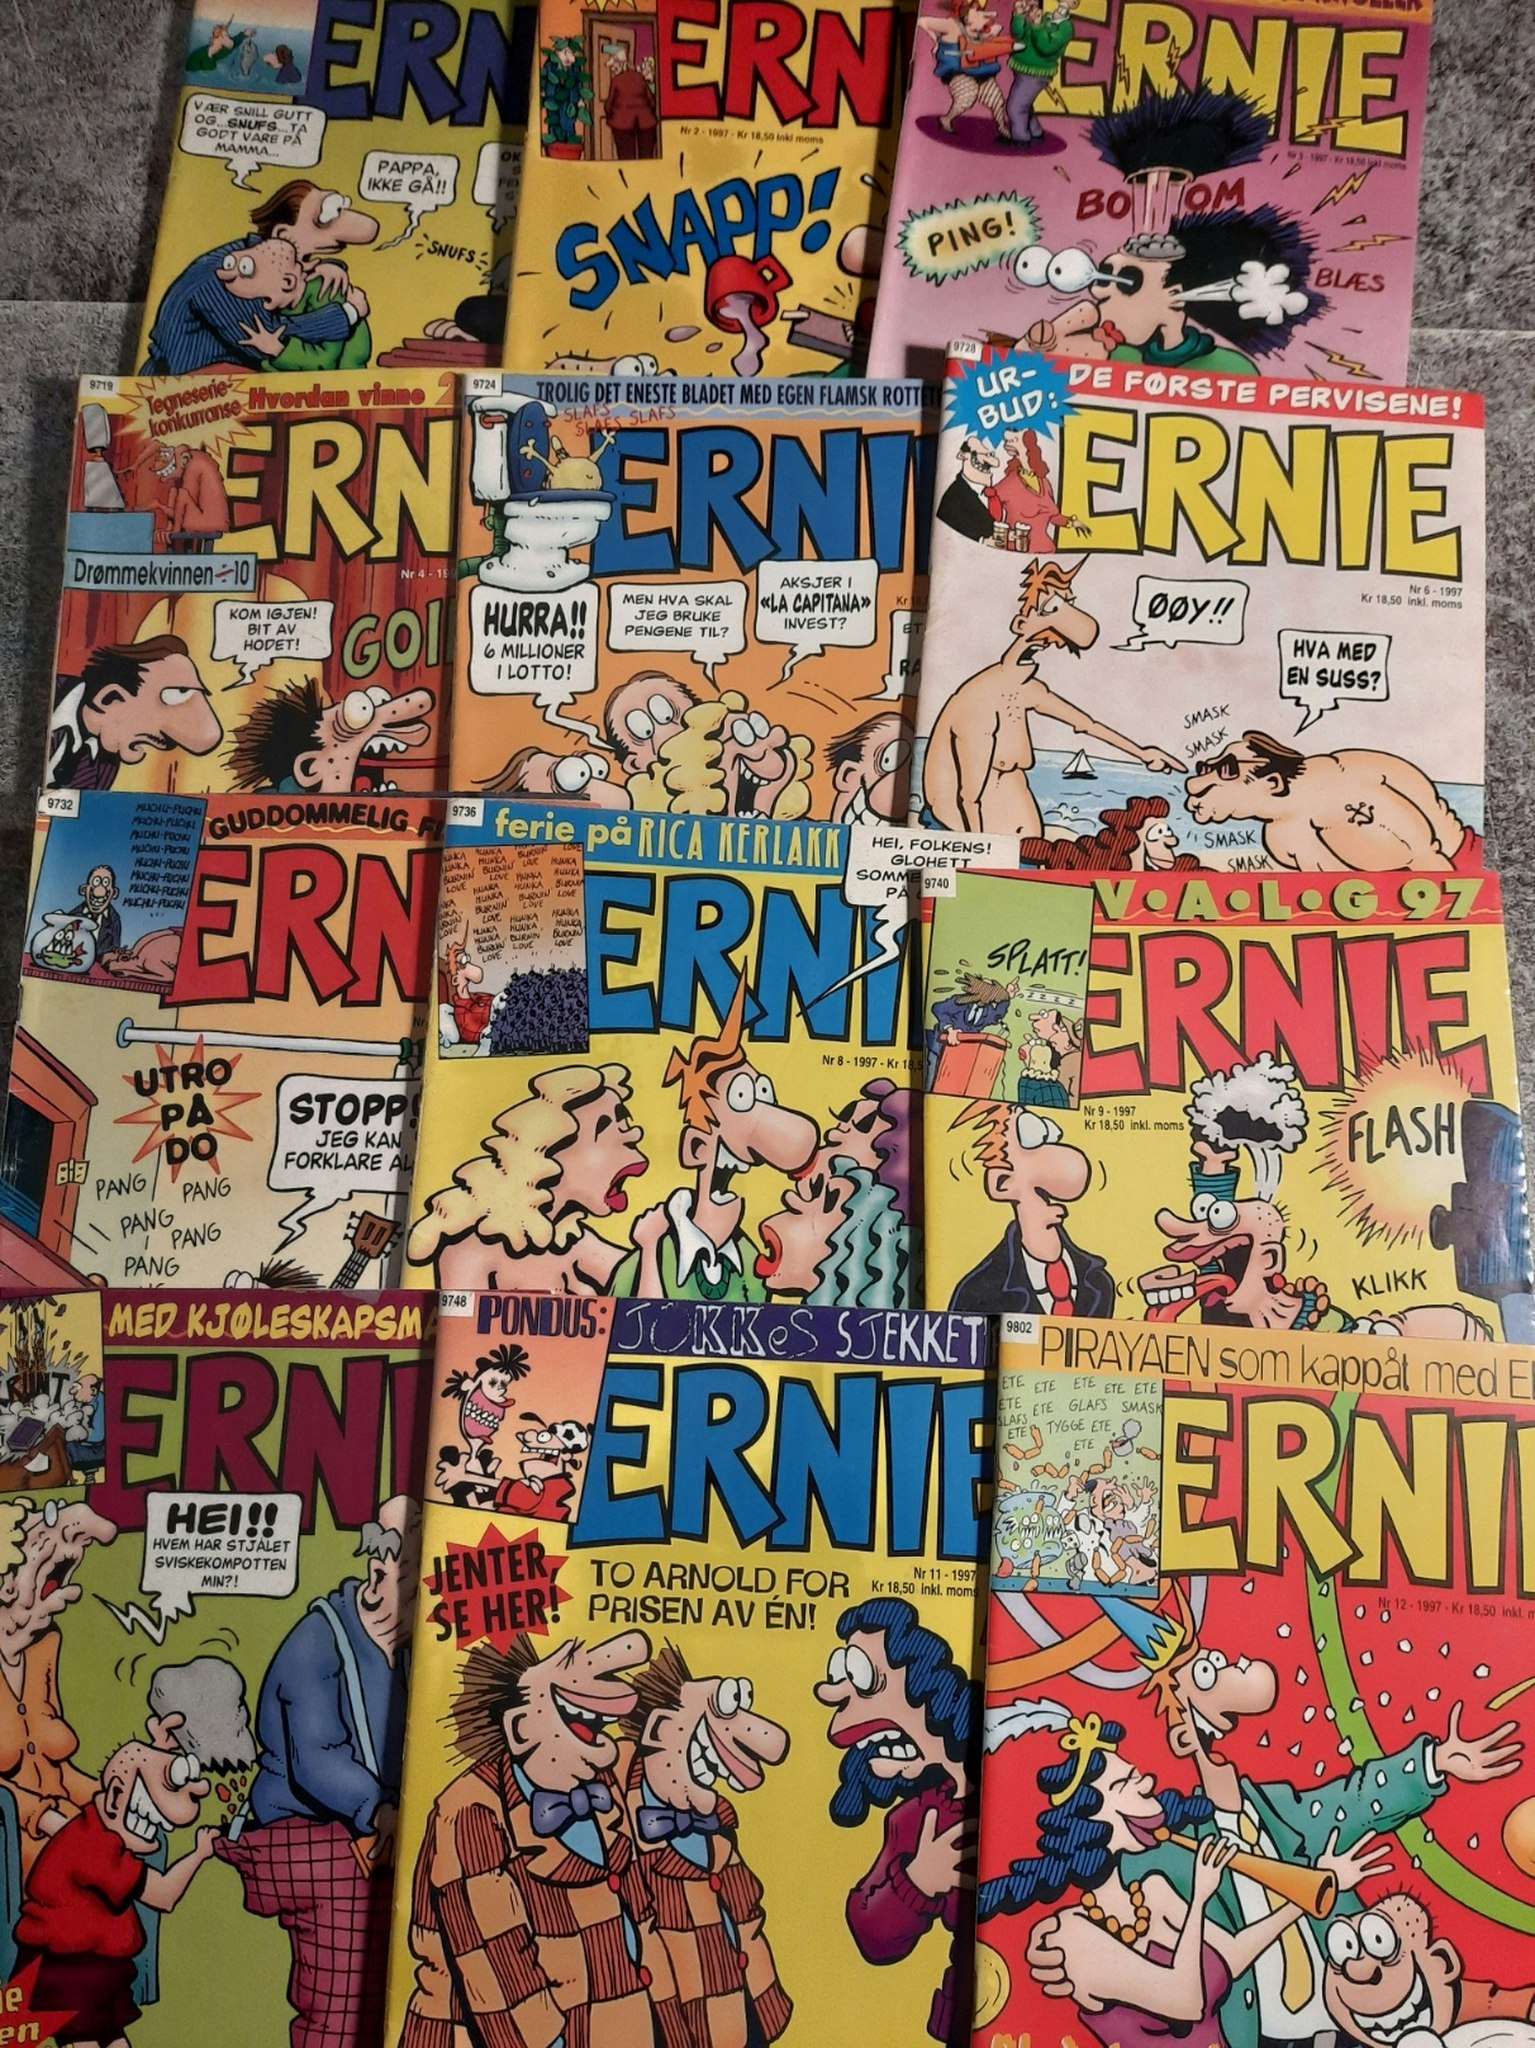 Ernie 1997 årgang komplett (lesepakke)